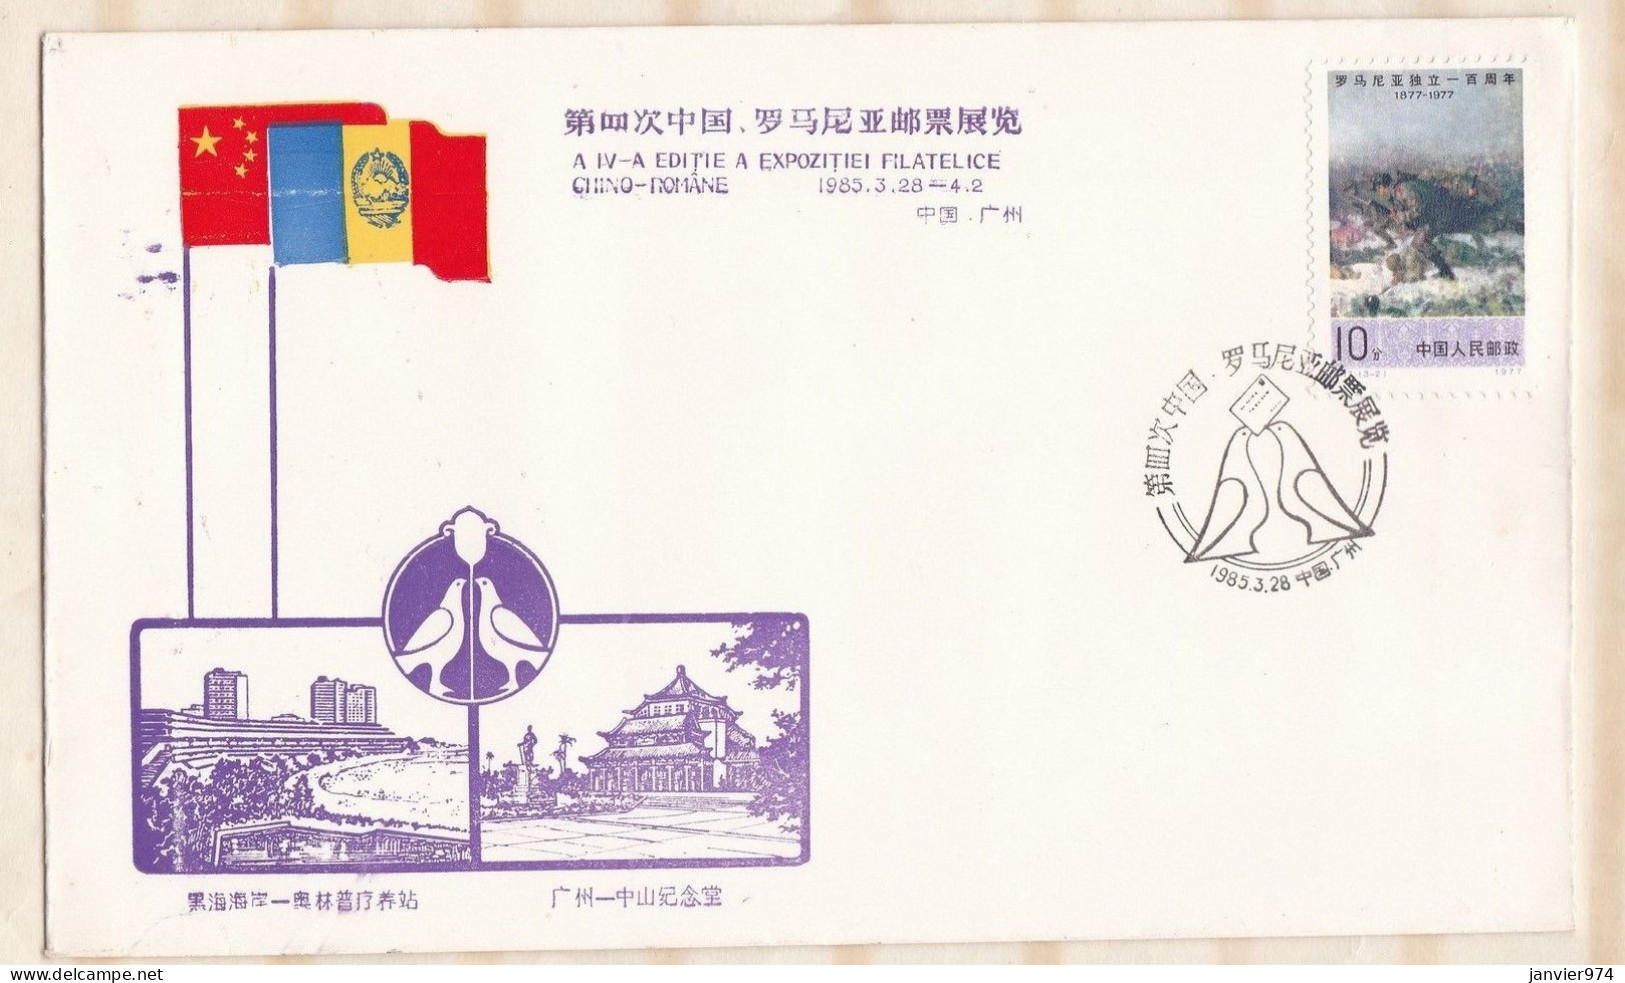 Chine 1985 , 3 lettres 1er jour et carte postale l'exposition philatélique Chino- Romane, Scan Recto verso